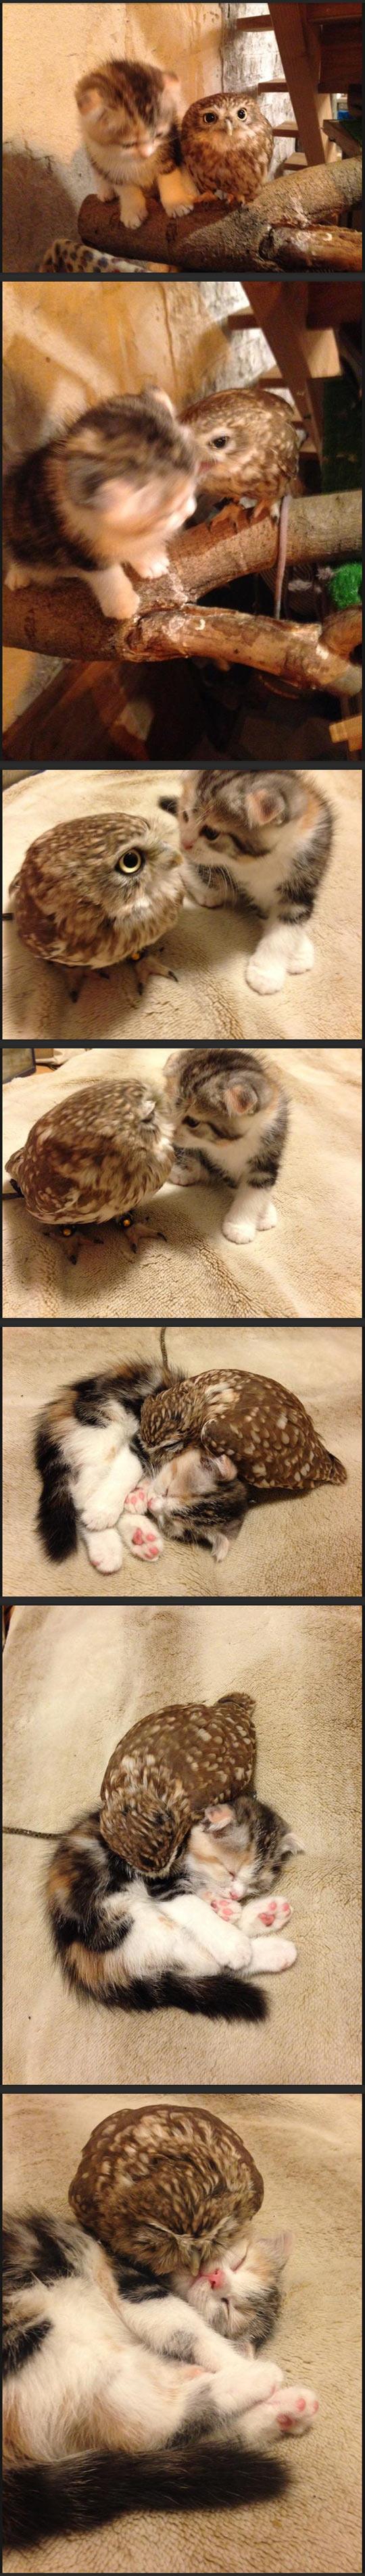 Kitten And Owlet